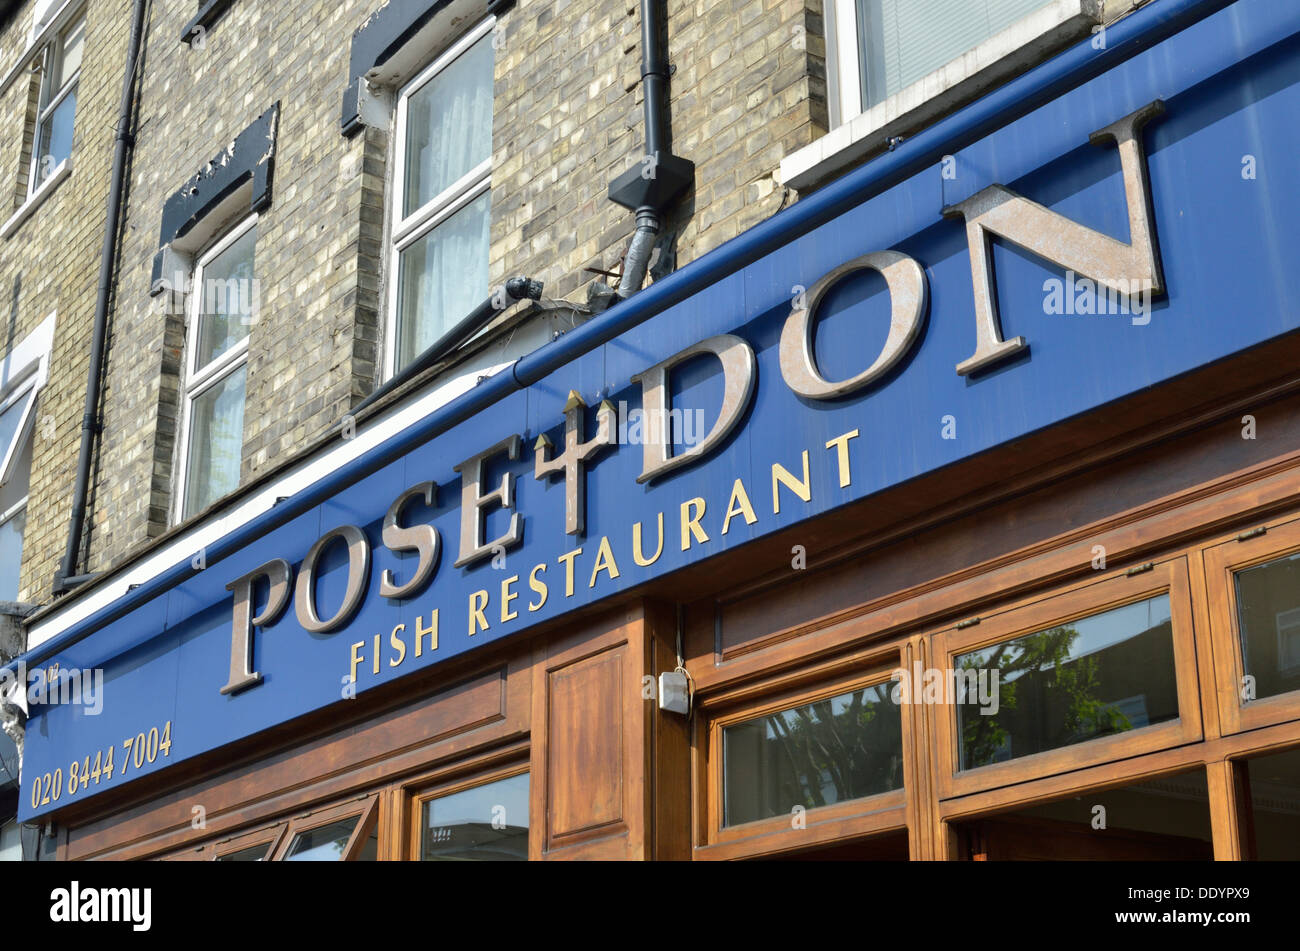 Poseidón restaurante de pescado High Road East Finchley, Londres, Reino Unido. Foto de stock